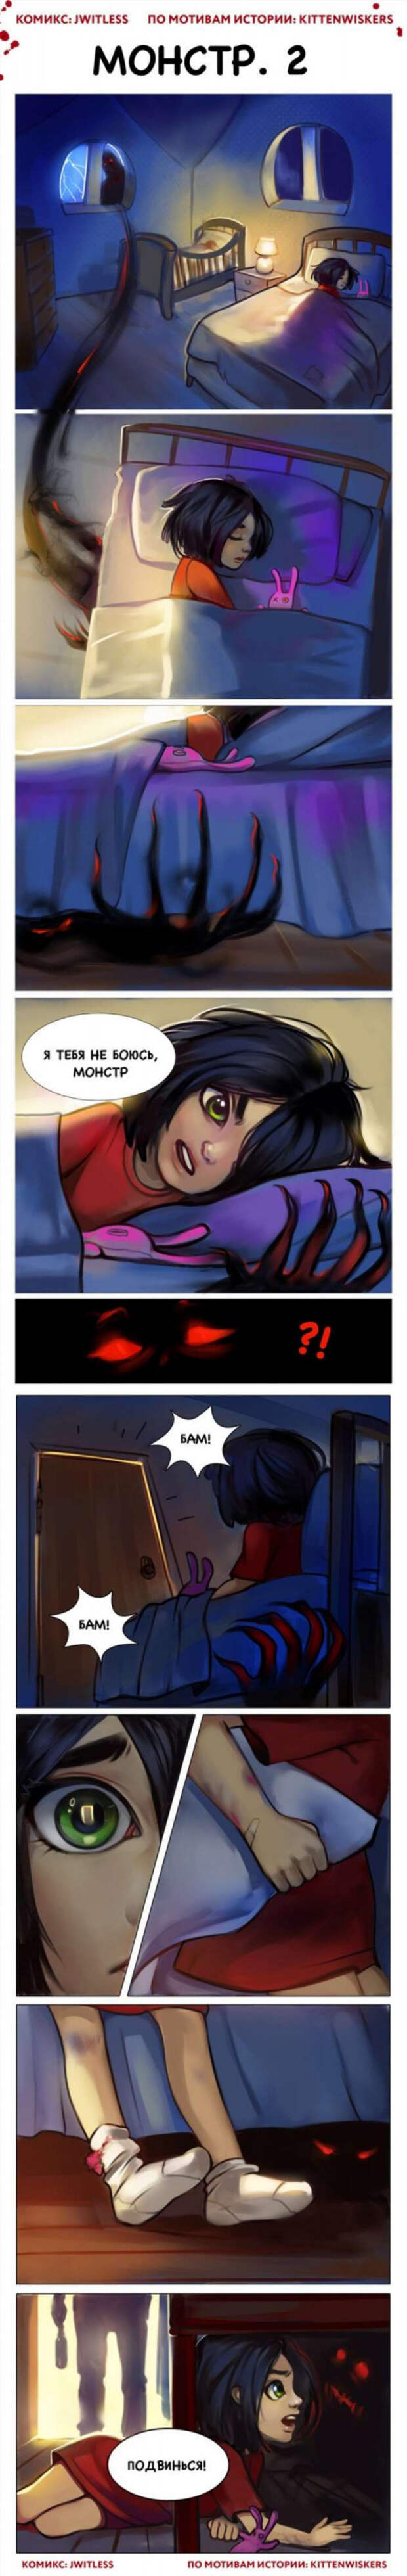 Комикс про монстра под кроватью и девочку